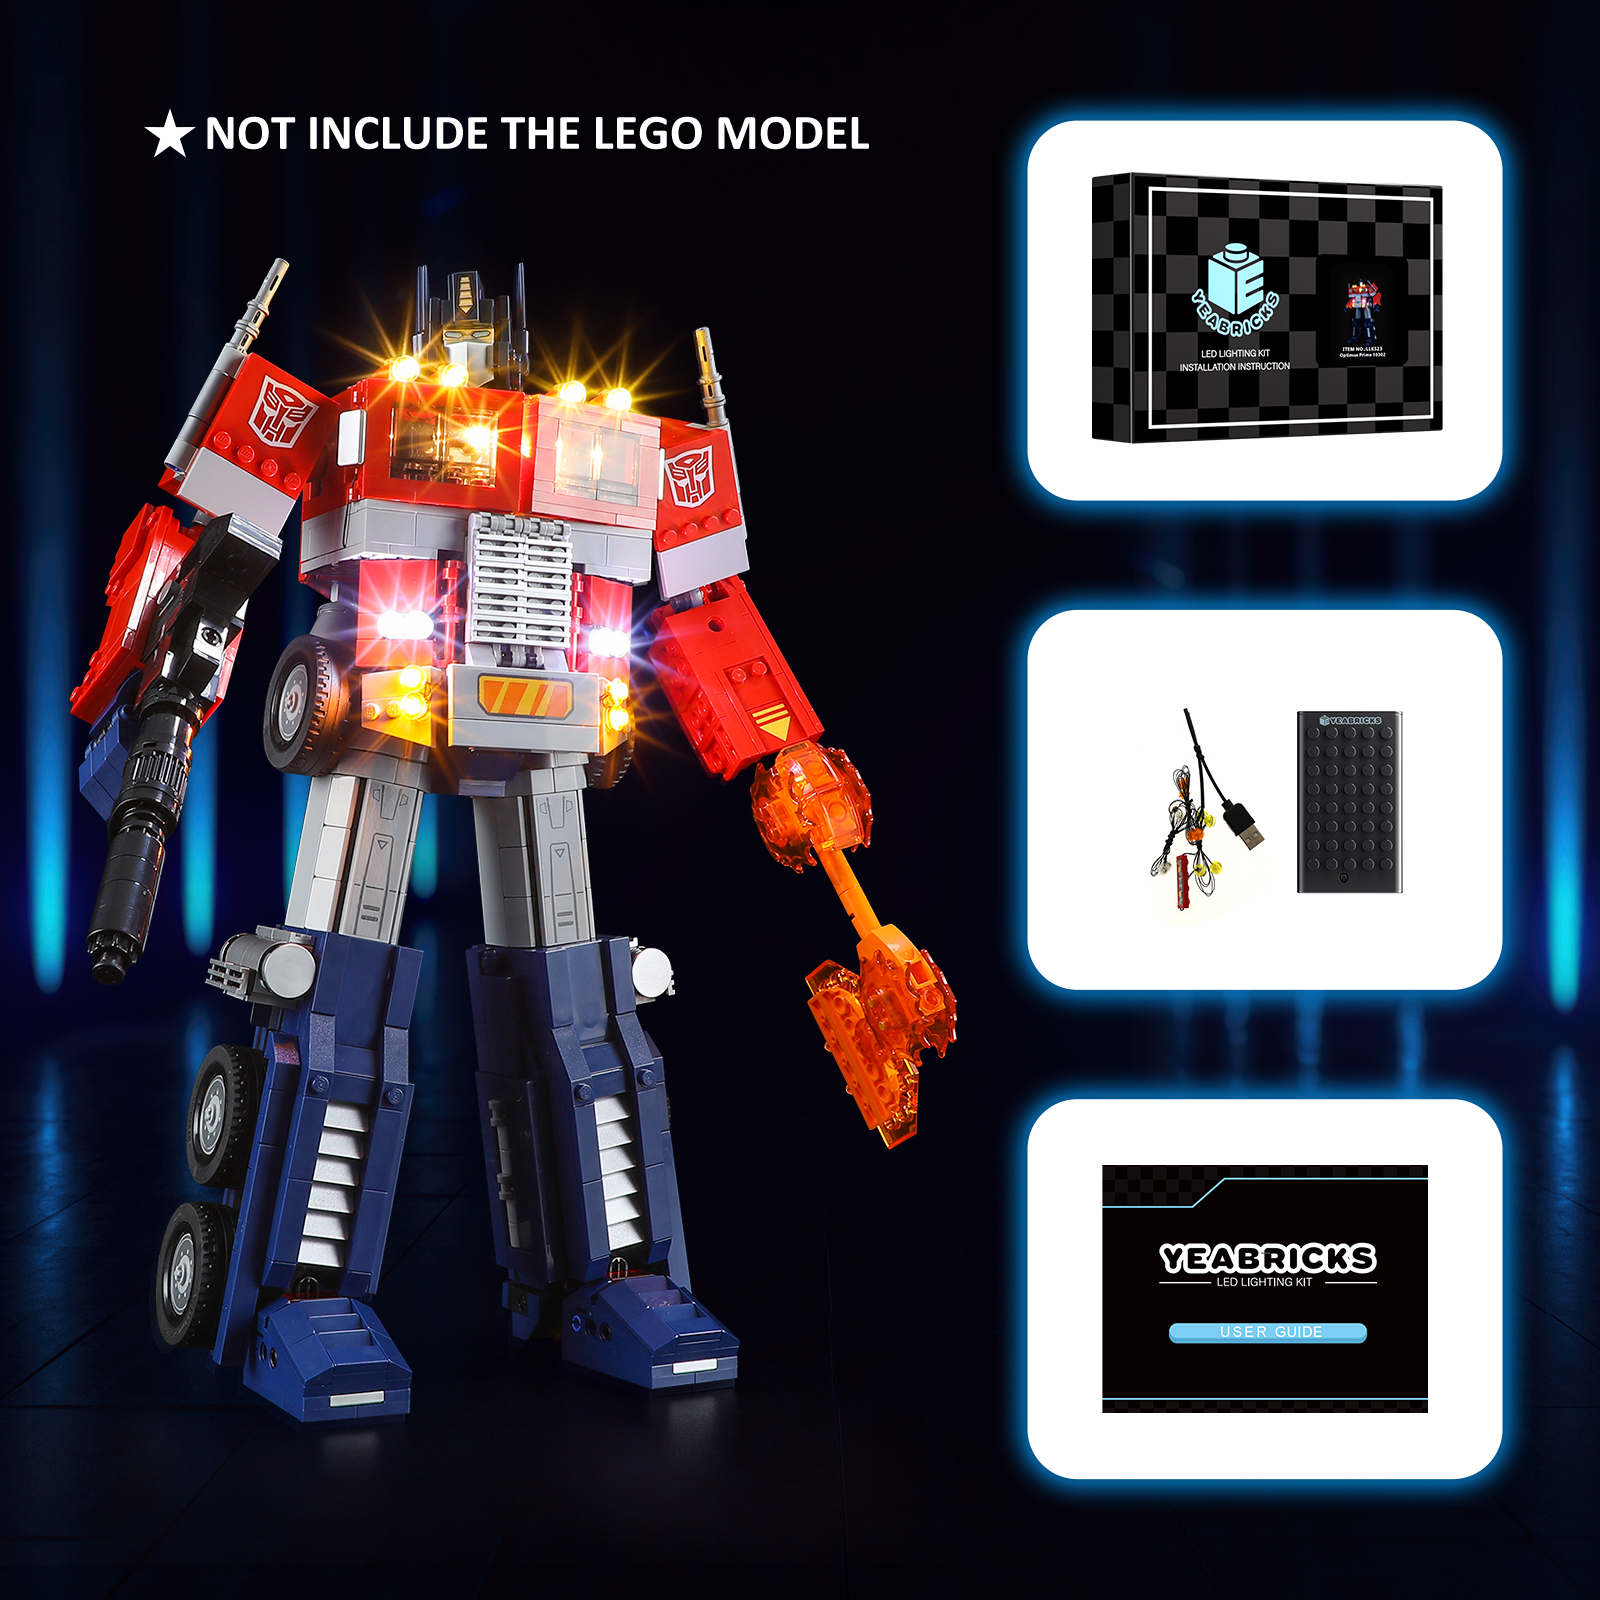 YEABRICKS LED Light Kit for 10302 Optimus Prime Building Blocks Set (NOT Include the Model) Bricks Toys for Children alx